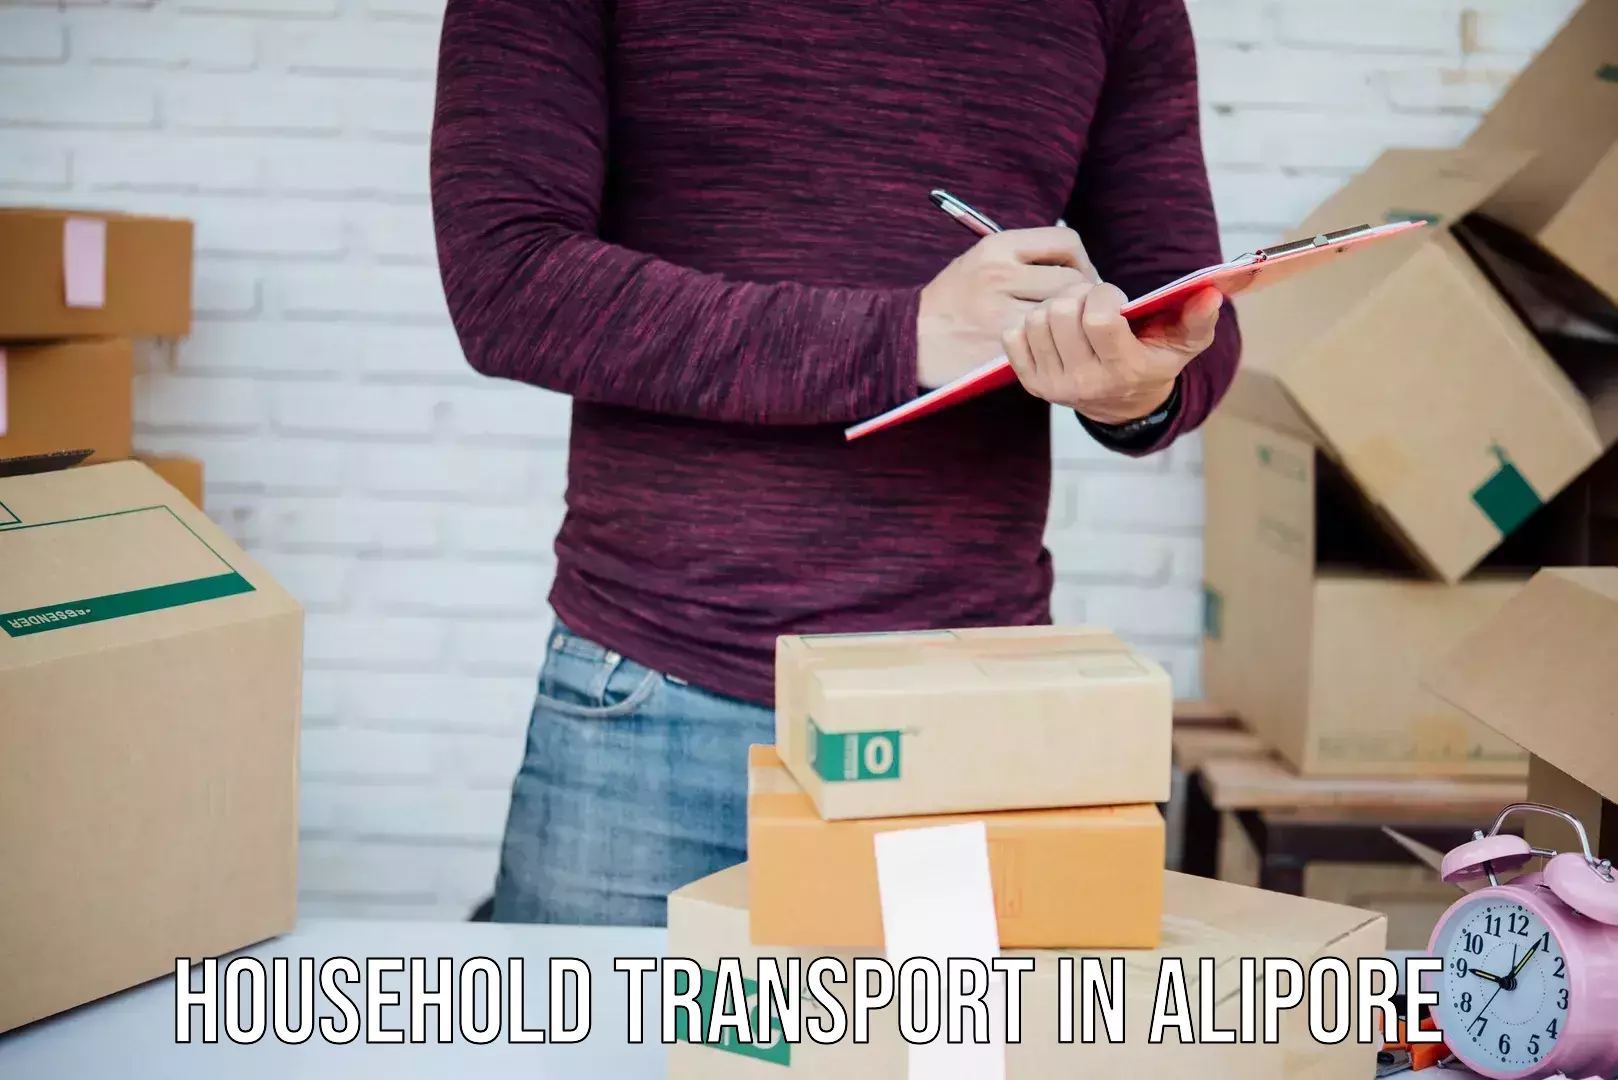 Expert household transport in Alipore